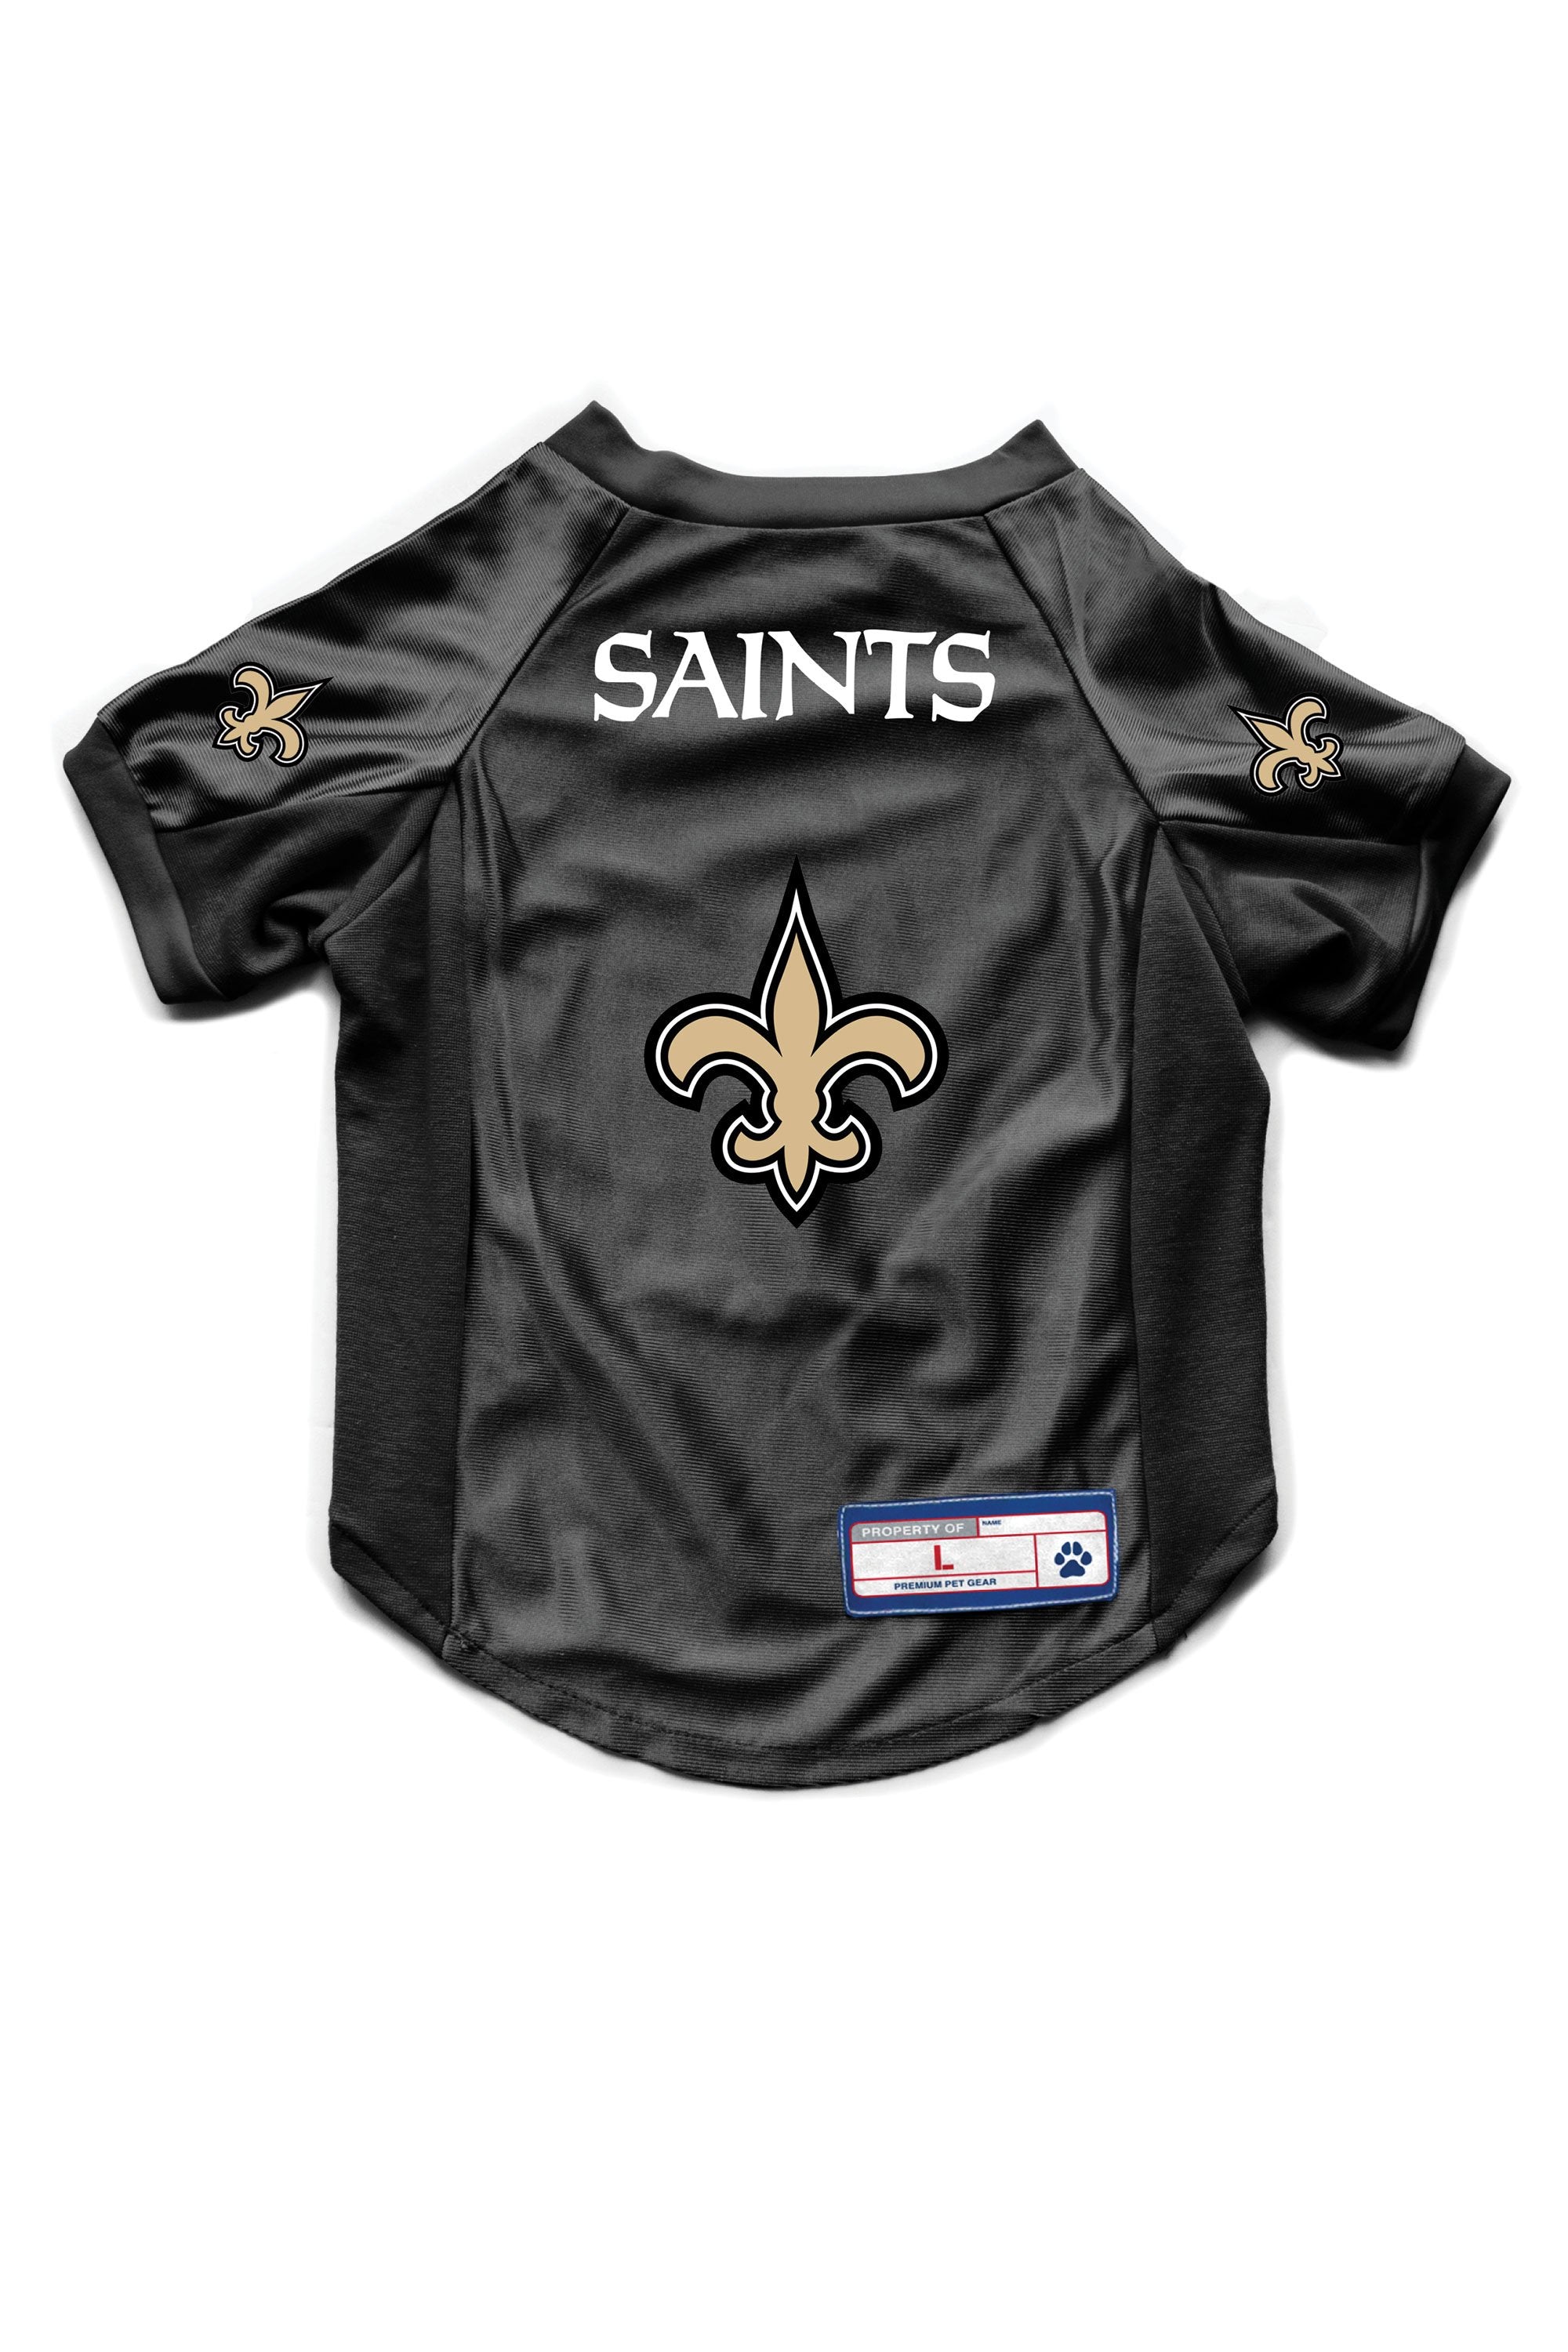 best saints jersey